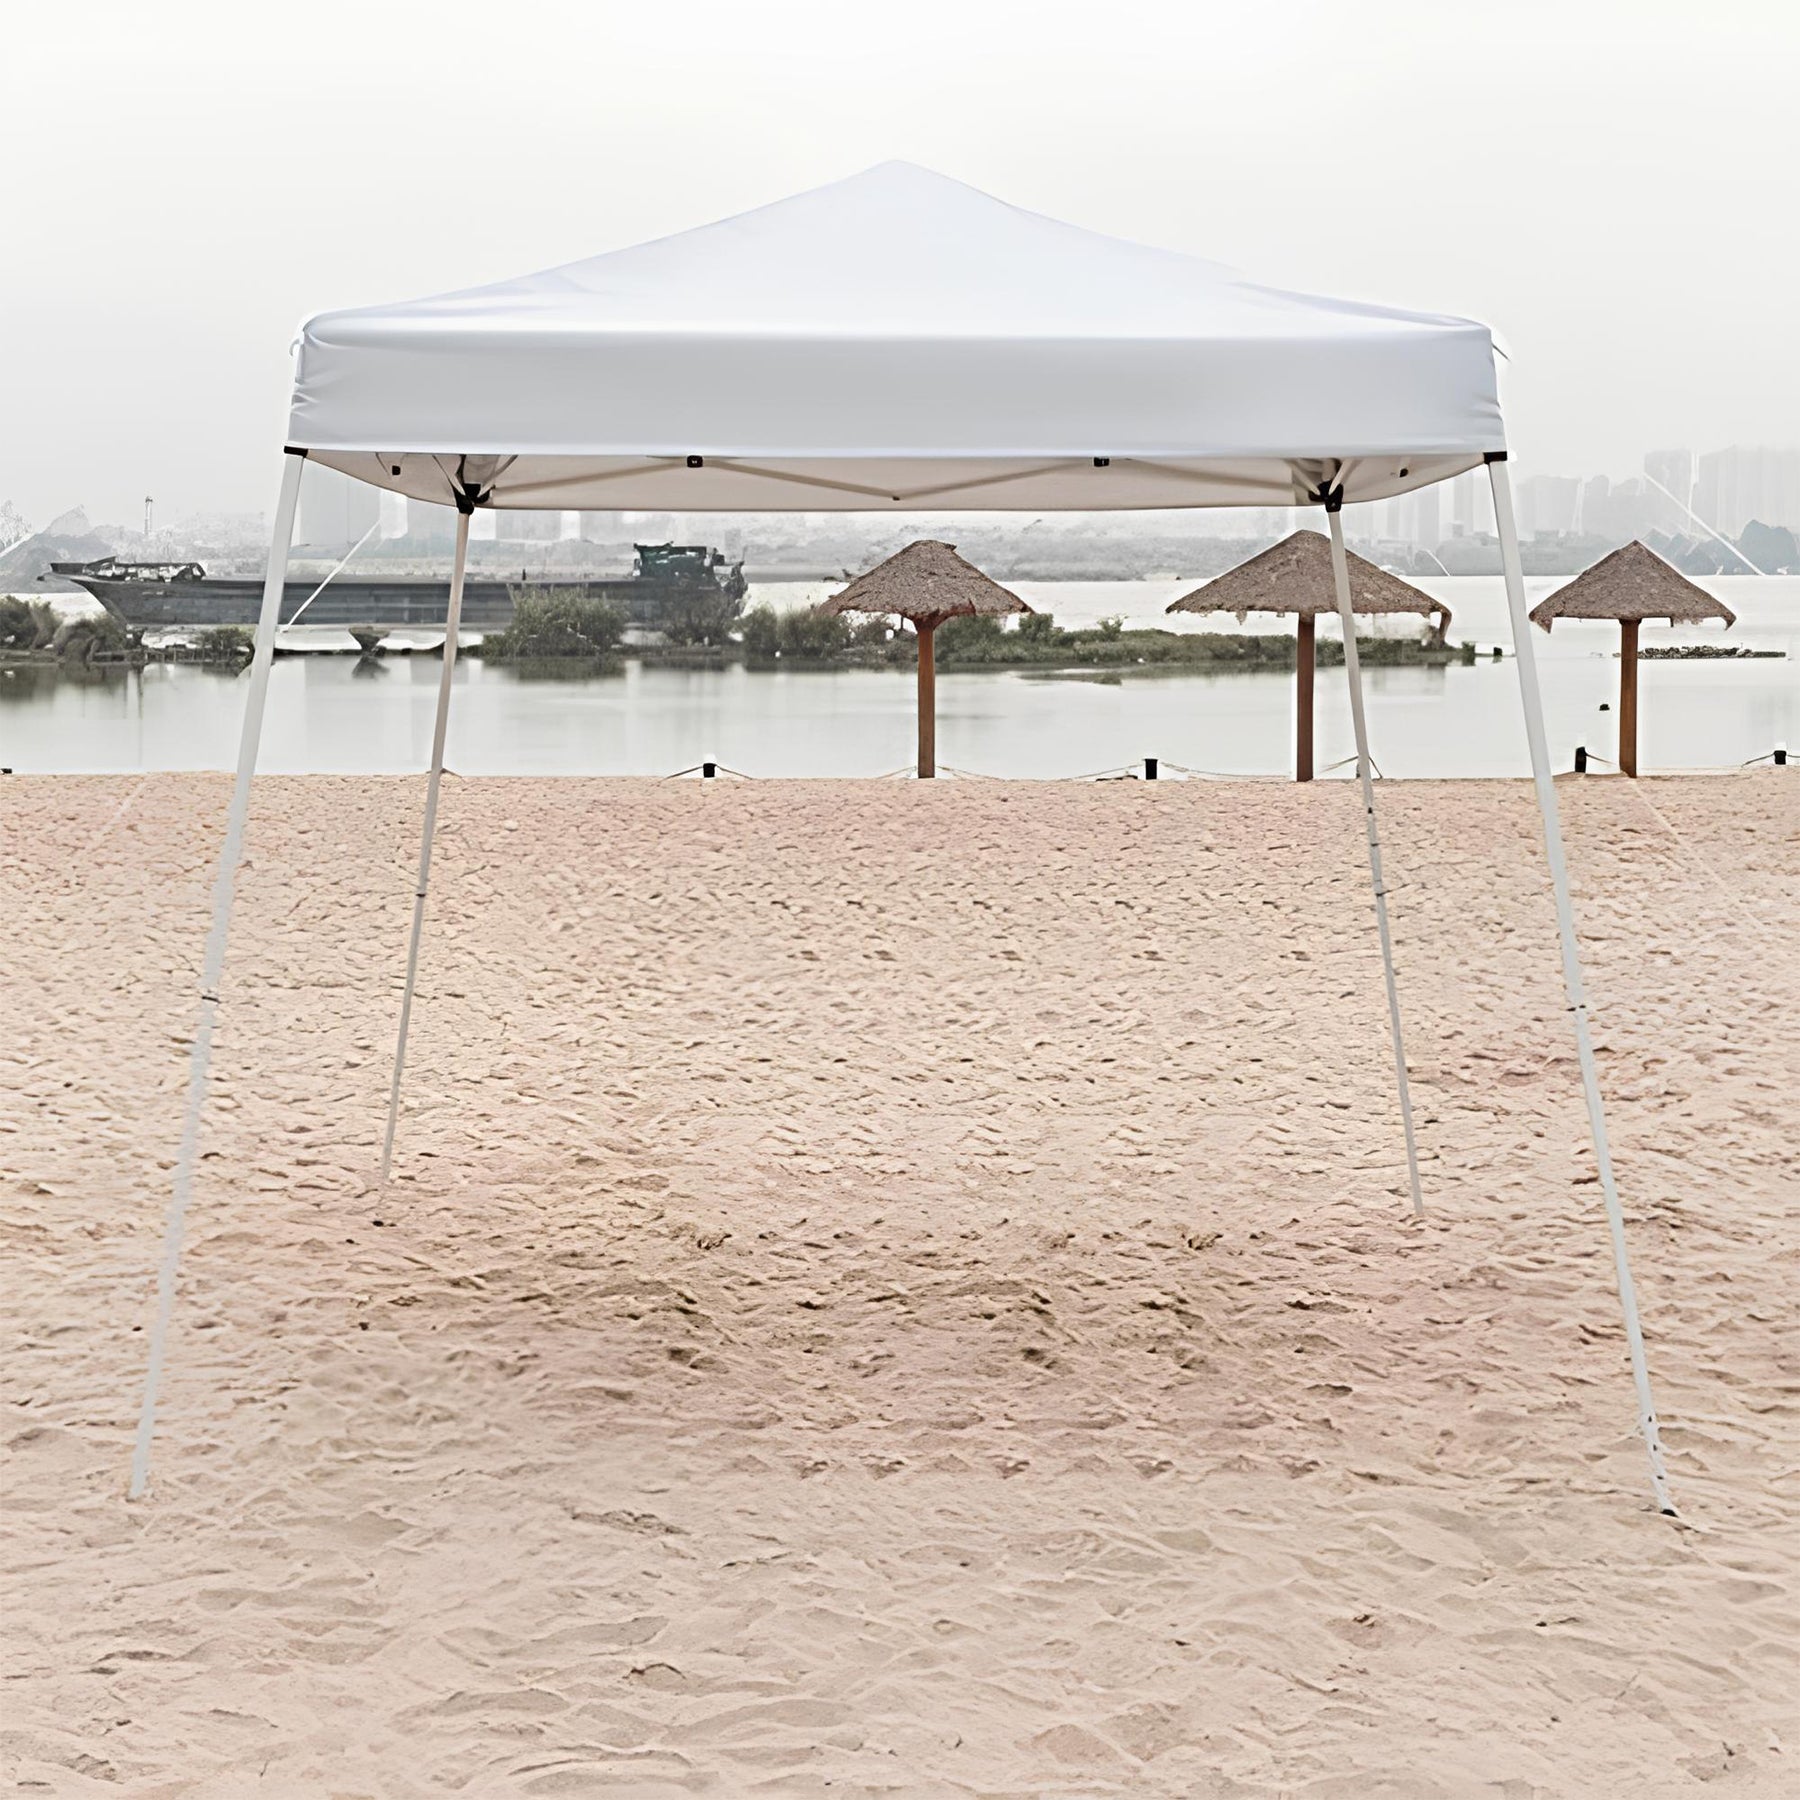 خيمة قابلة للطي - لون أبيض  الحجم: 2.4 × 2.4 م